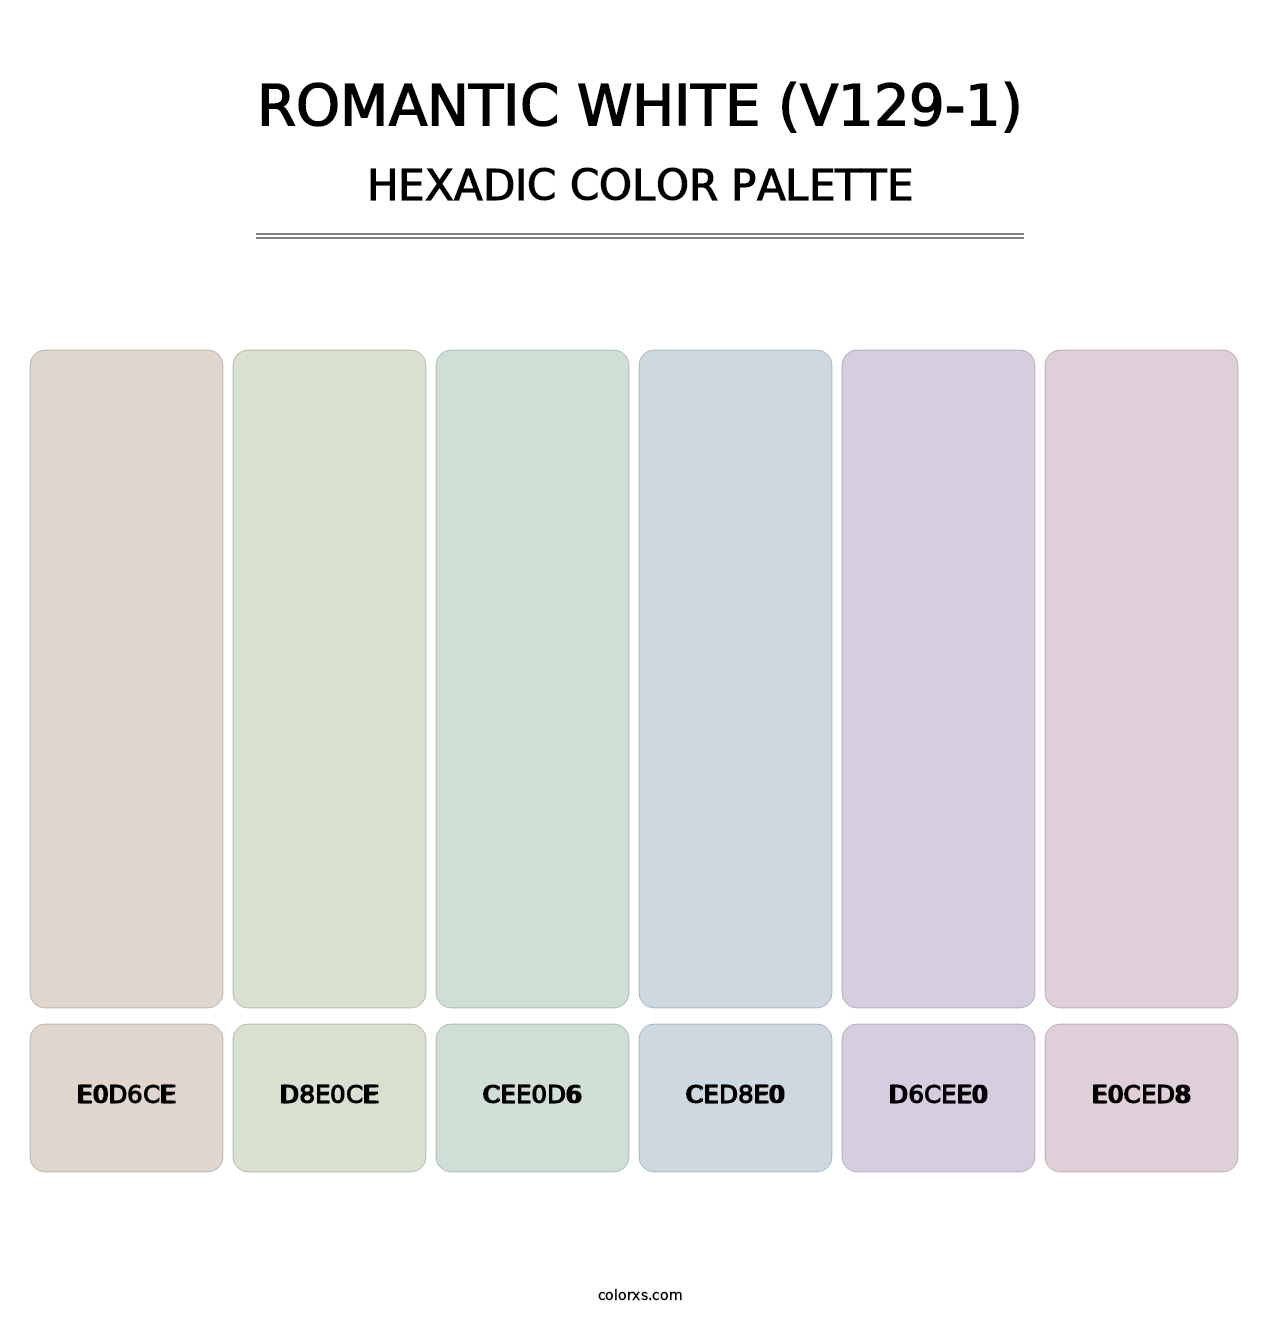 Romantic White (V129-1) - Hexadic Color Palette